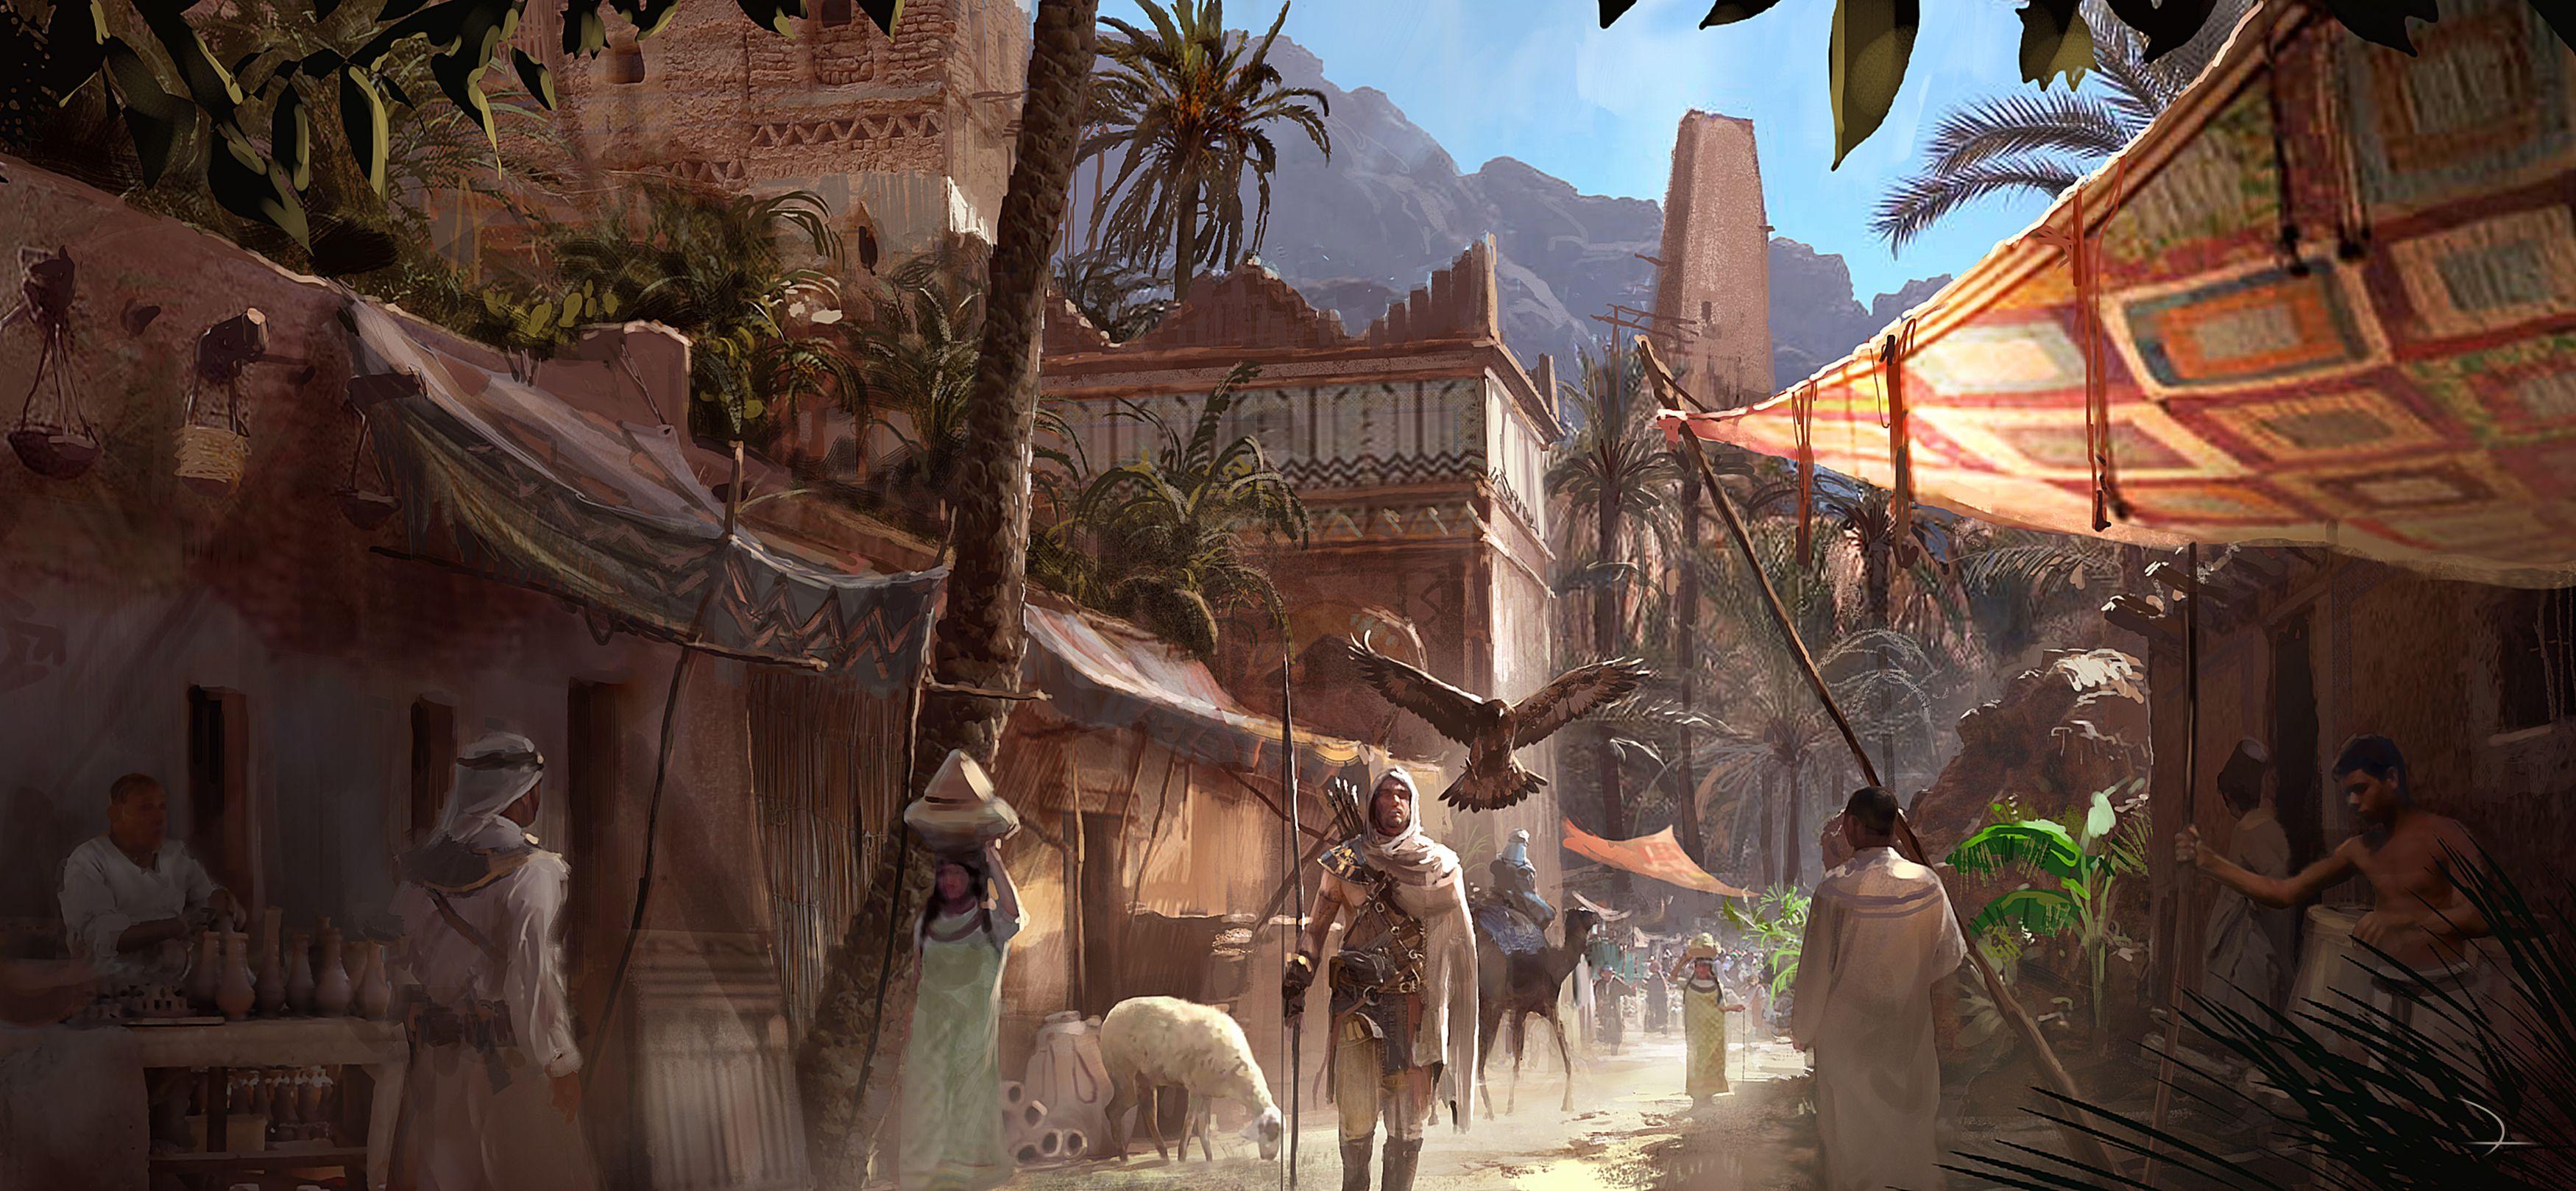 Assassins Creed Origins Wallpapers Top Free Assassins